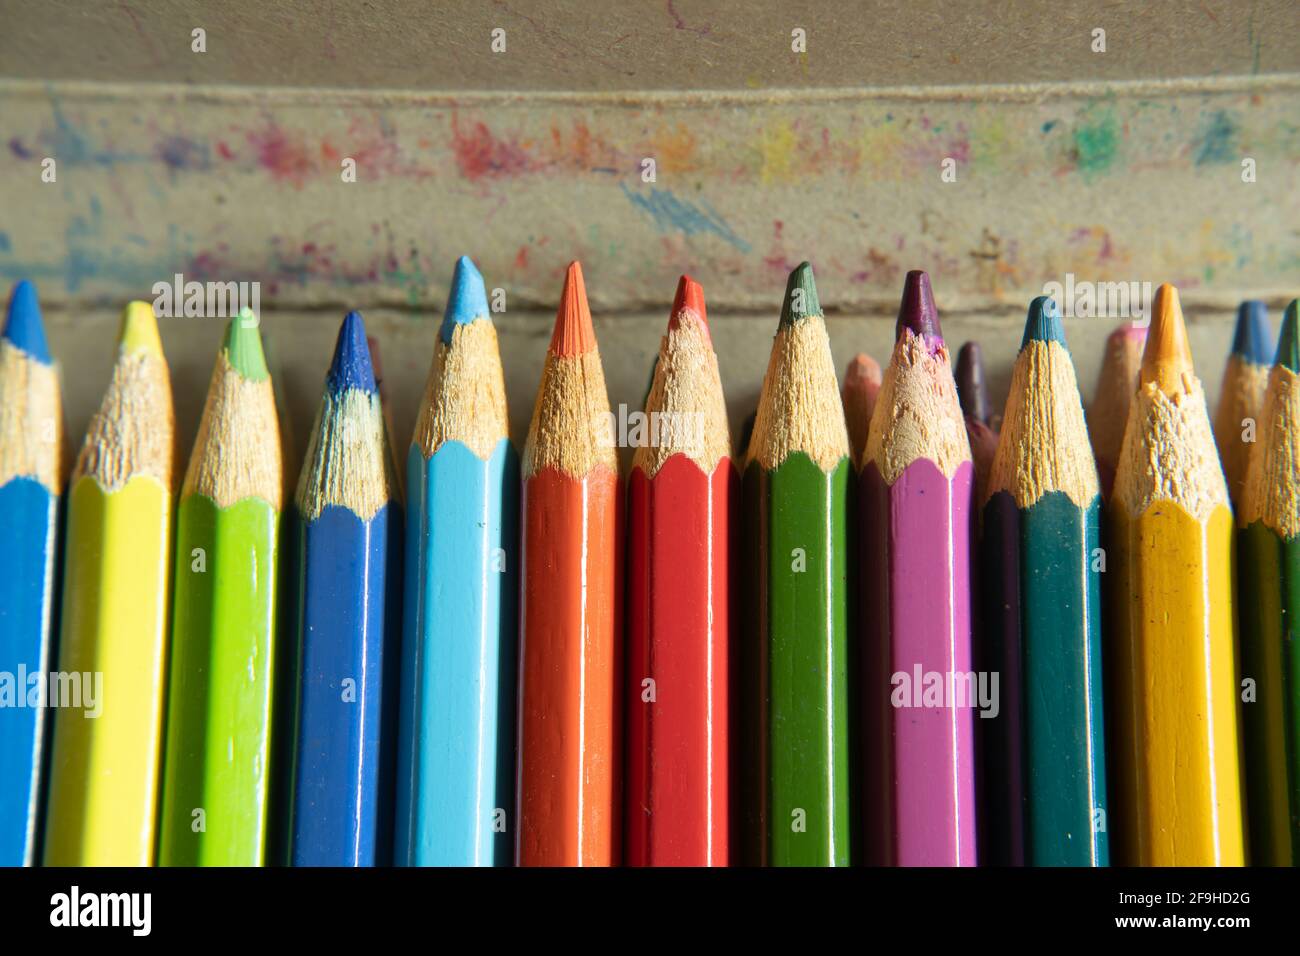 4 cajas de lápices de colores para niños, lápices de colores, regalos de  Navidad, lápices para niños, lápices de bocetos, lápices solubles en agua